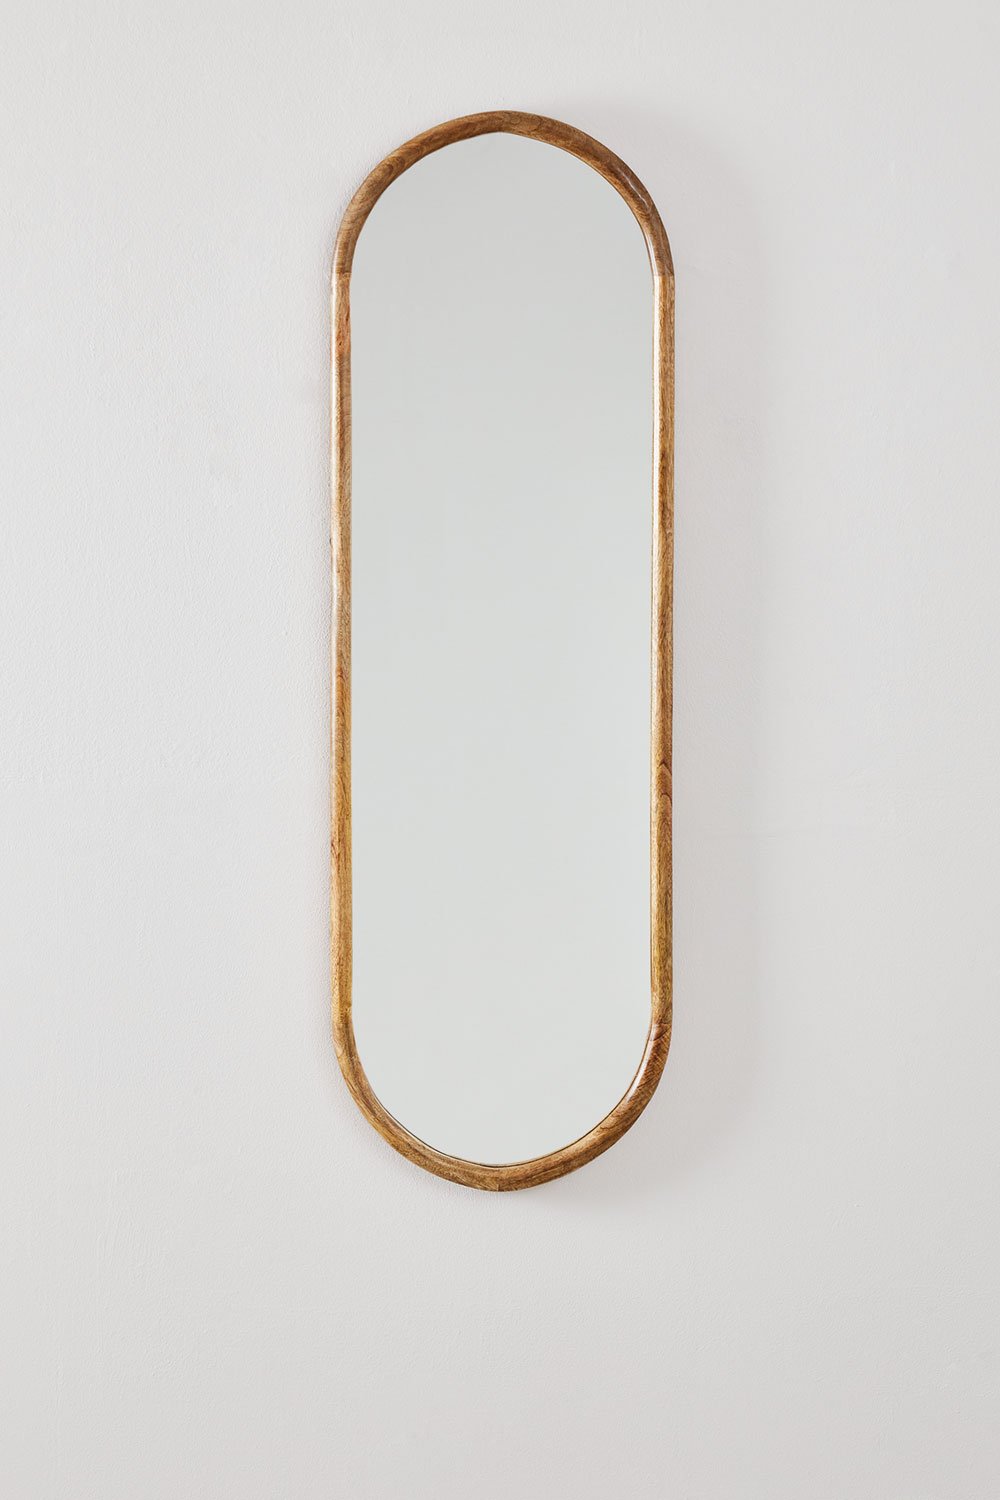 Specchio da parete ovale in legno di mango (35x115 cm) Munya, immagine della galleria 2